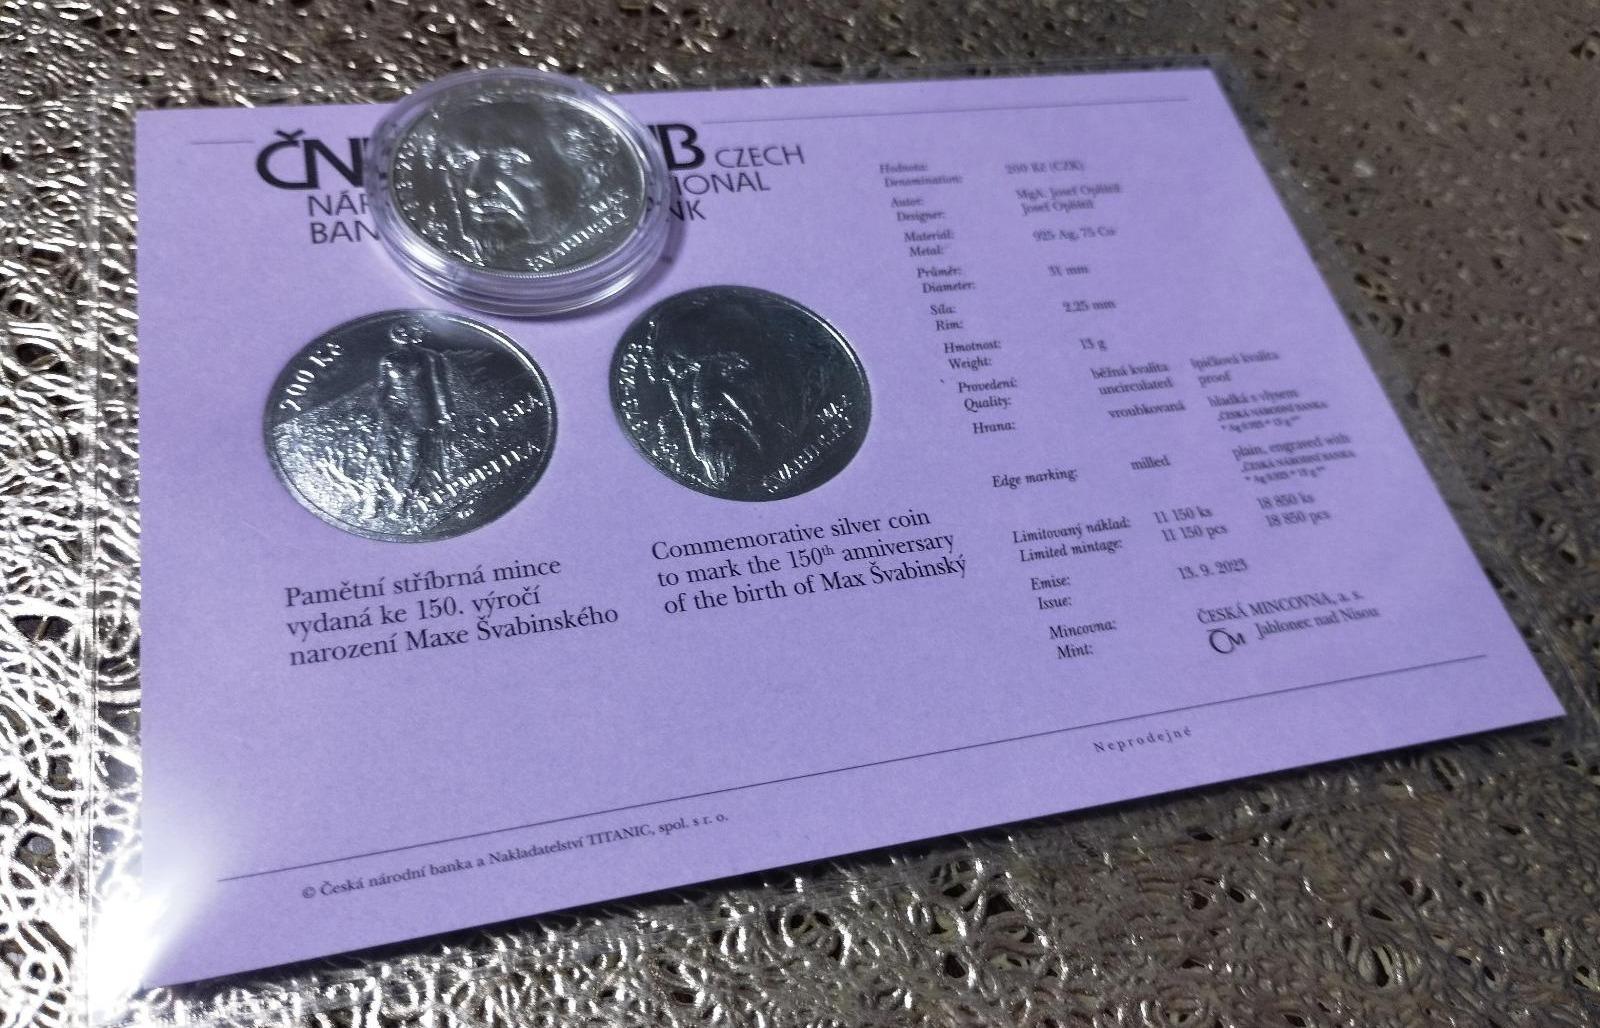 Pamätná strieborná minca vydaná k 150. výročiu narodenia Maxa Švabinského - Numizmatika